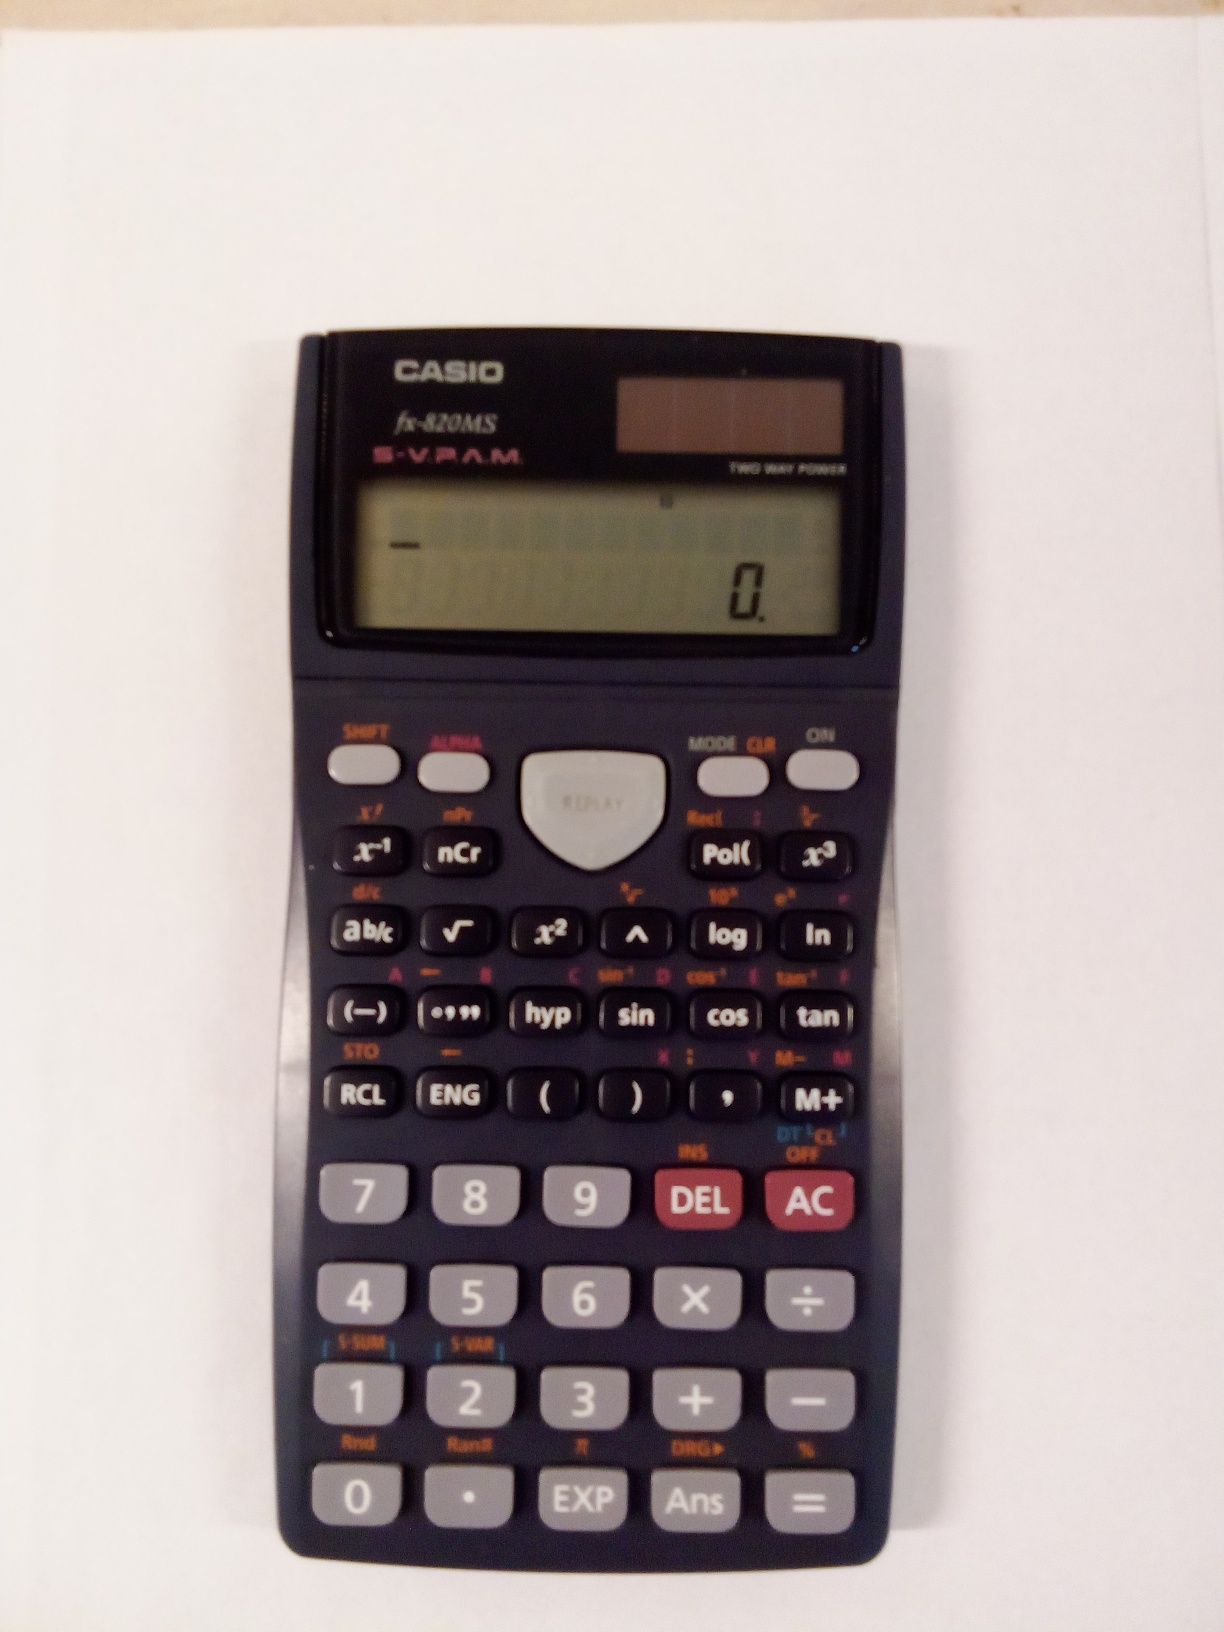 Sprzedam kalkulator wielofunkcyjny CASIO fx-820MS